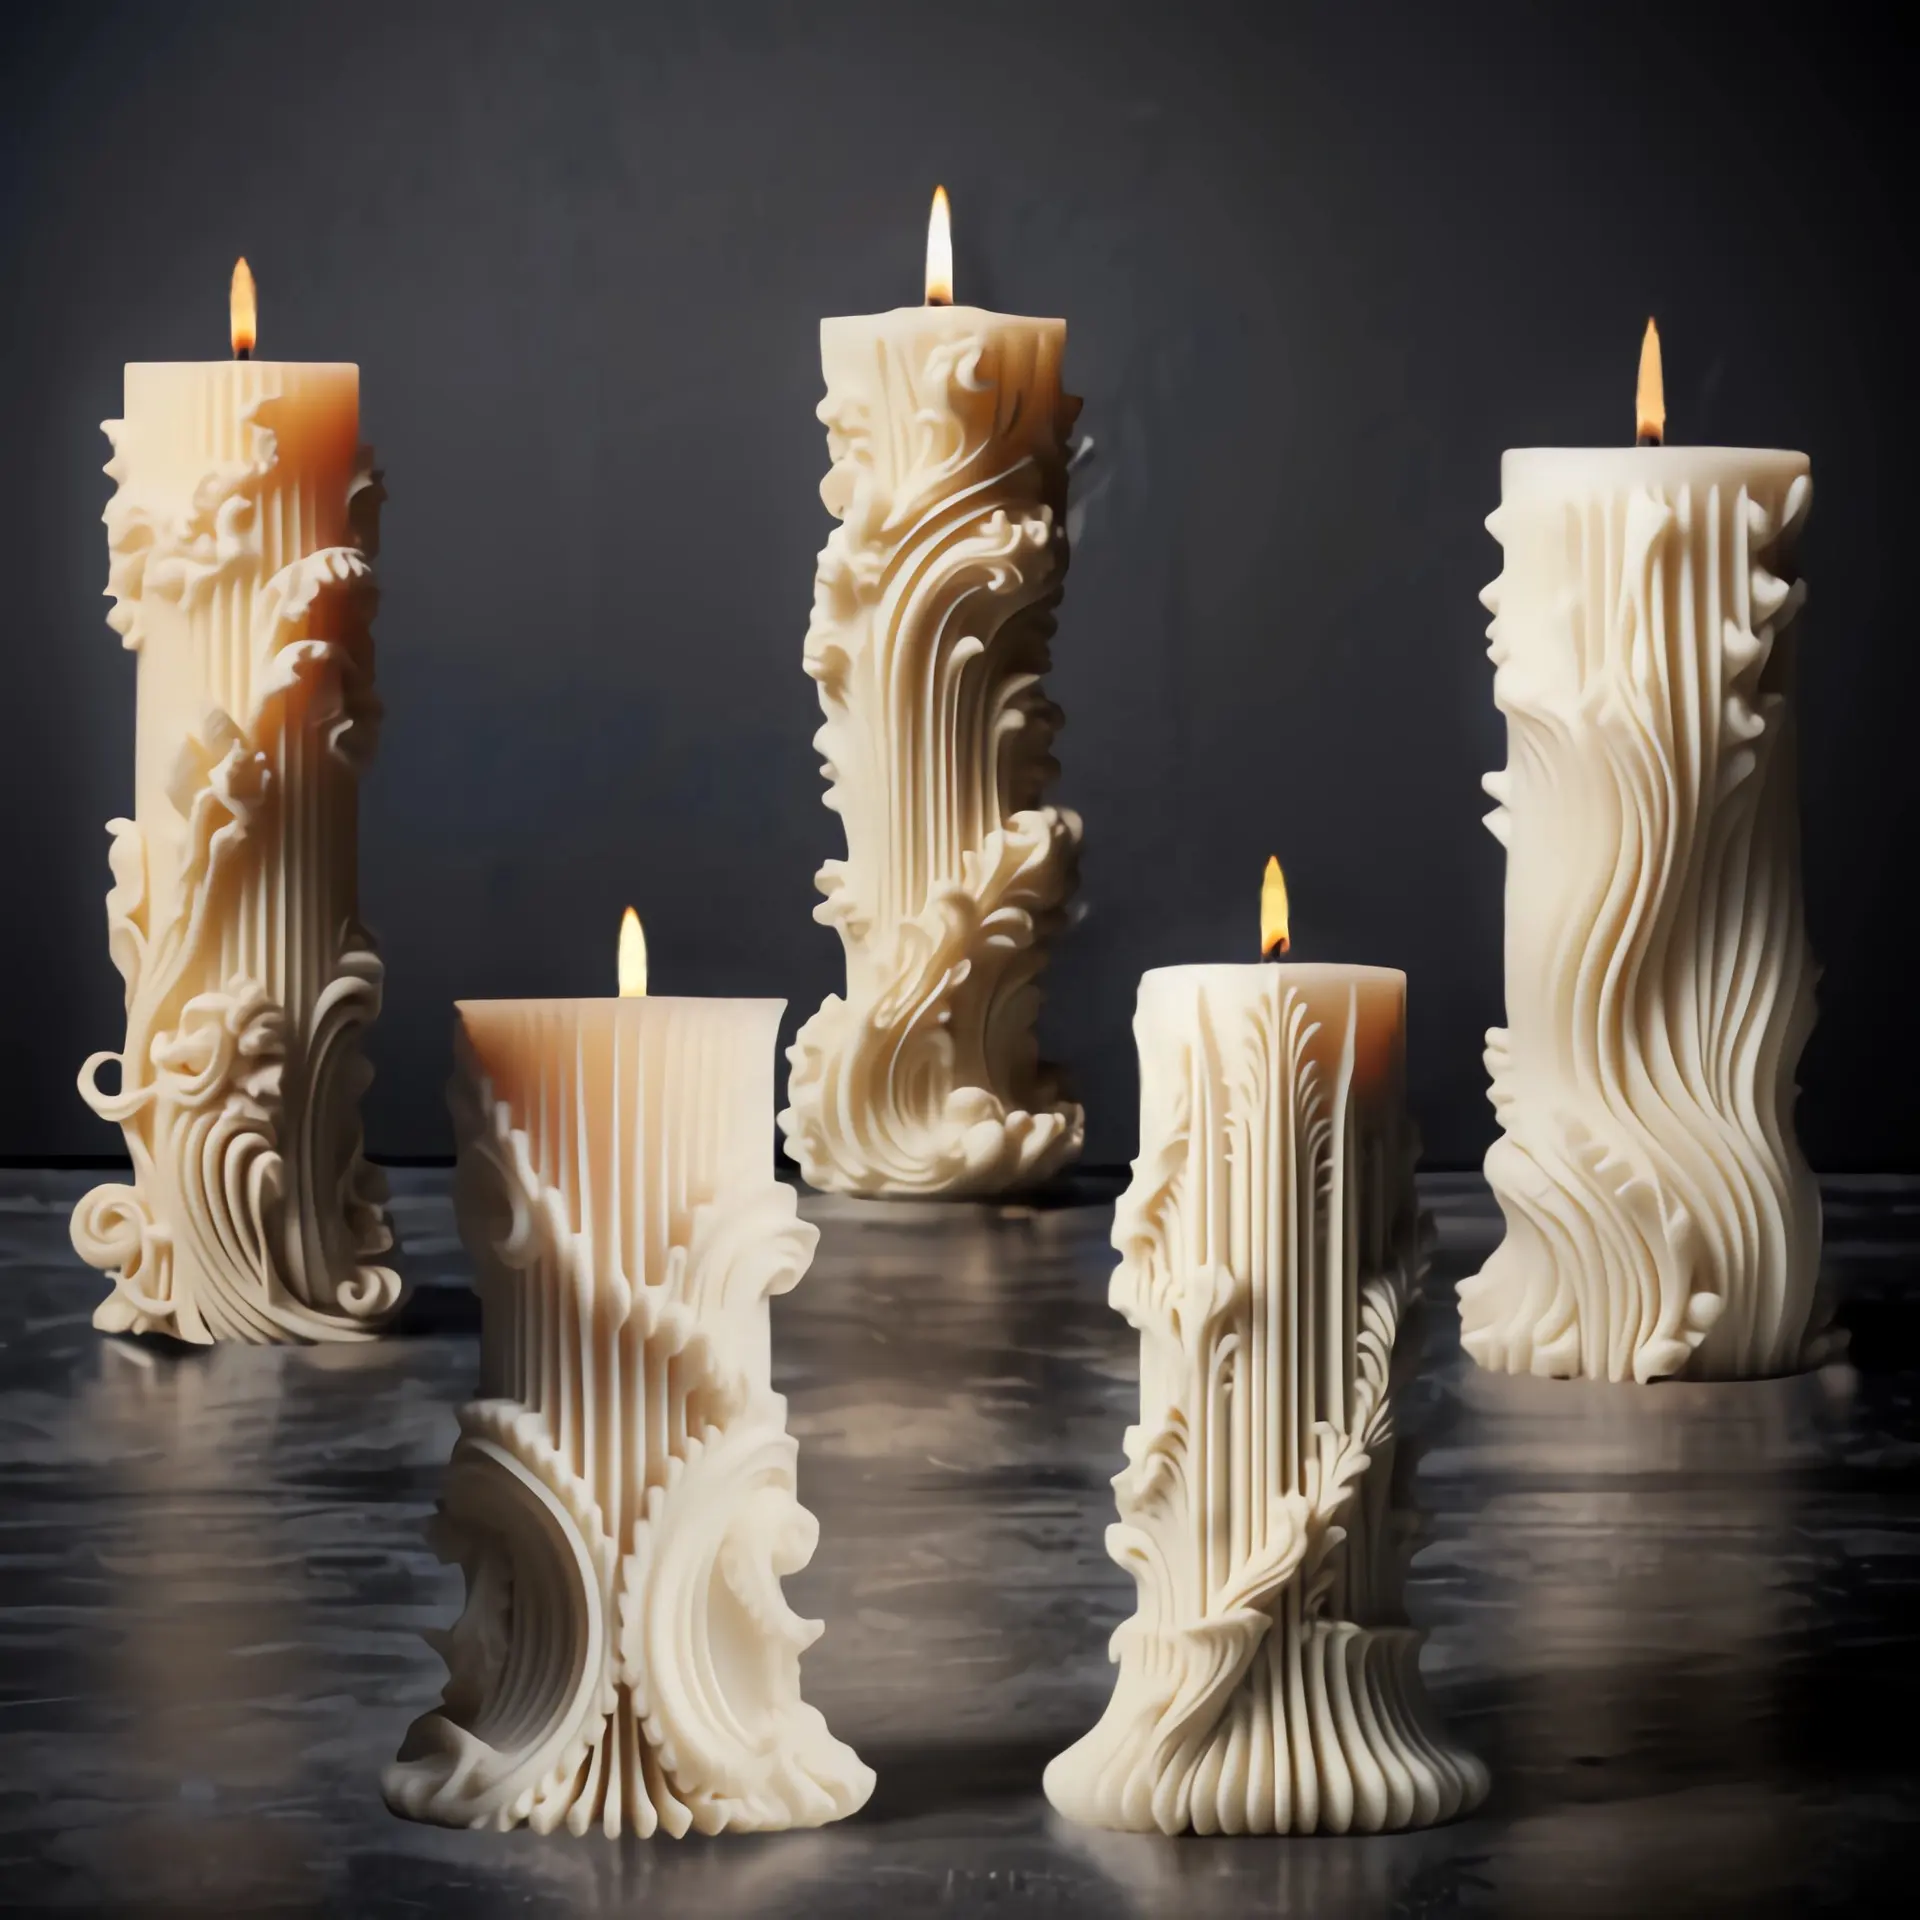 DM855 stile europeo fai da te pilastro a strisce cera di soia 3D aromaterapia Retro candela cilindrica stampo Silicone decorazione per la casa